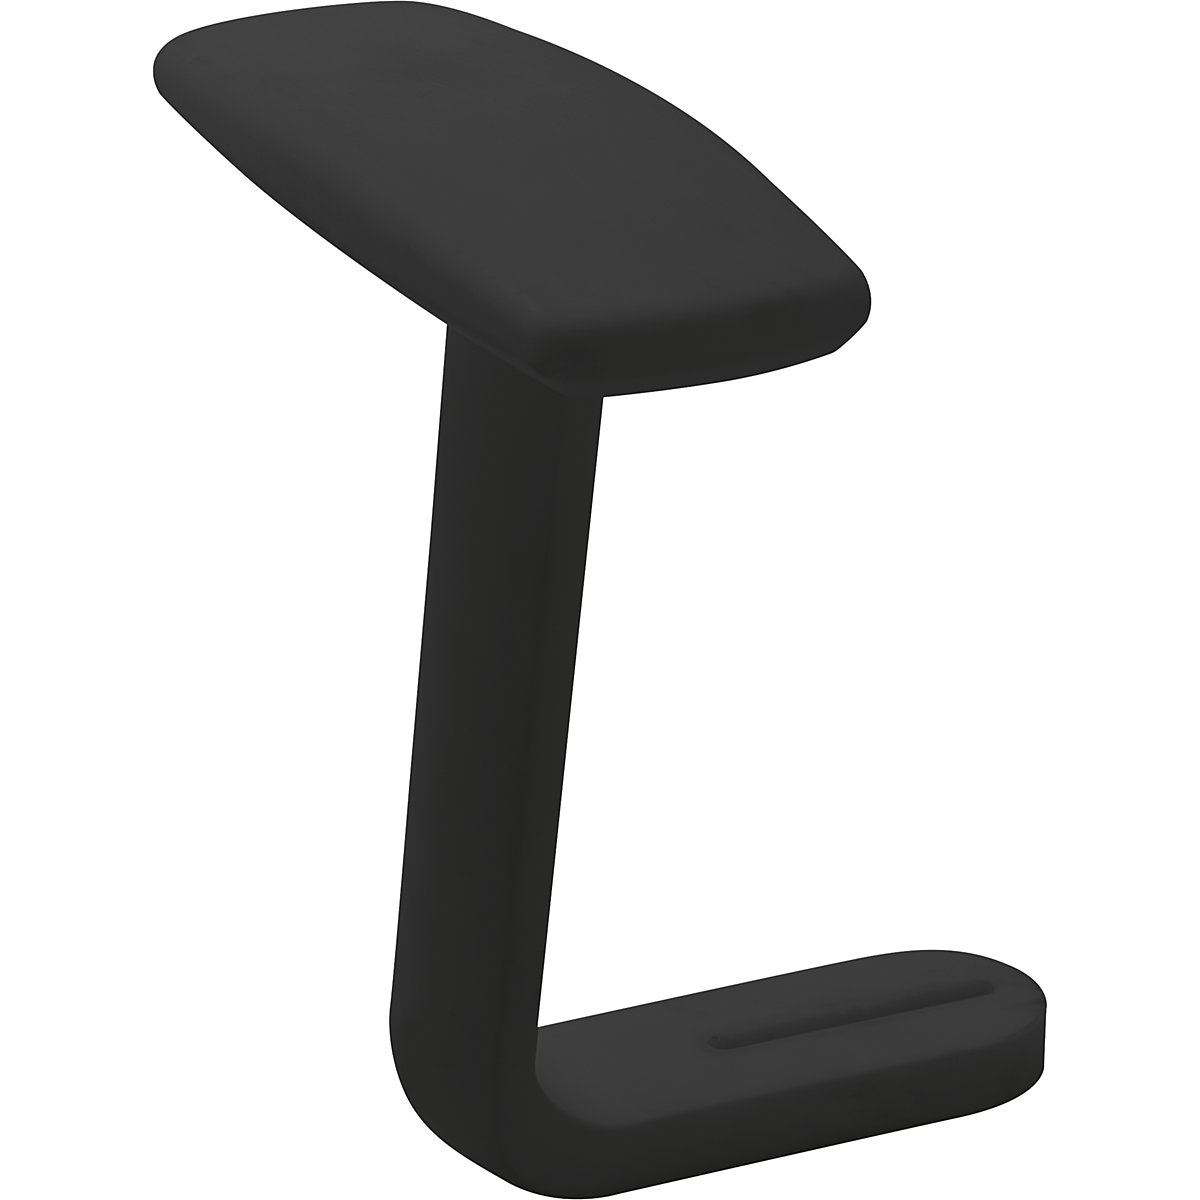 Područky pro kancelářskou otočnou židli – Prosedia